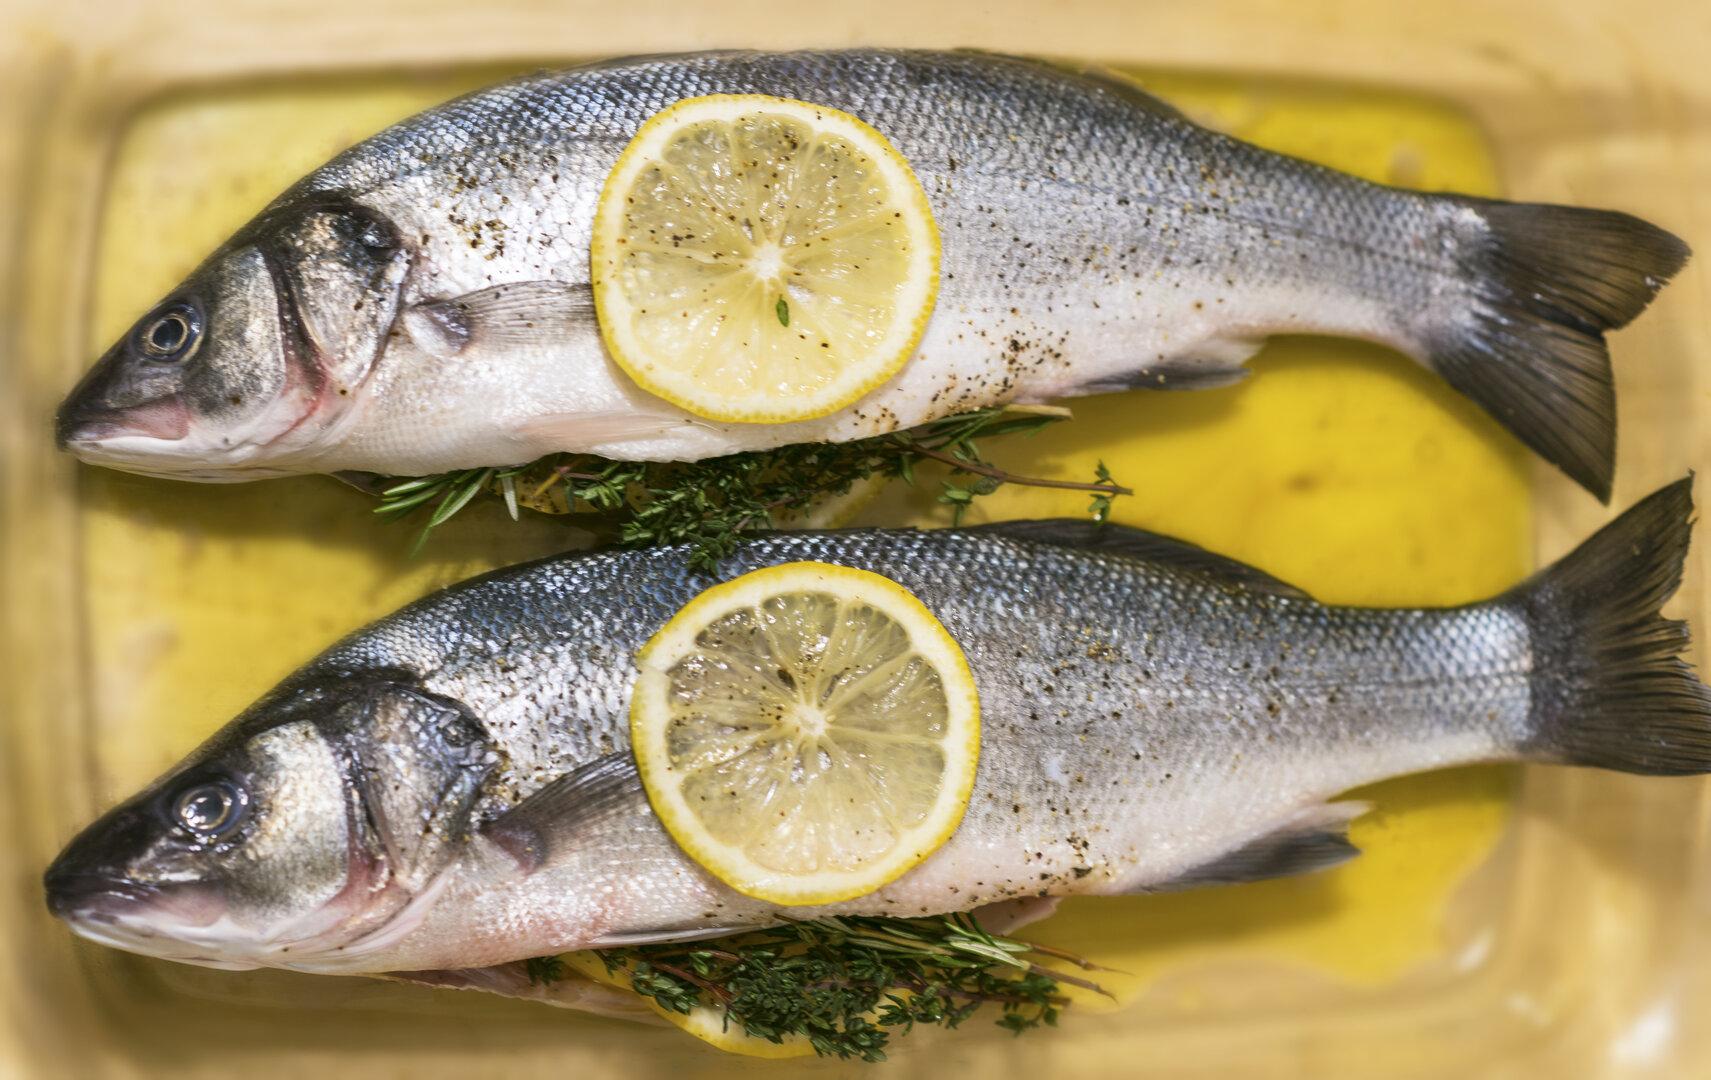 Konsum von  frischem Fisch senkt Risiko für Depressionen